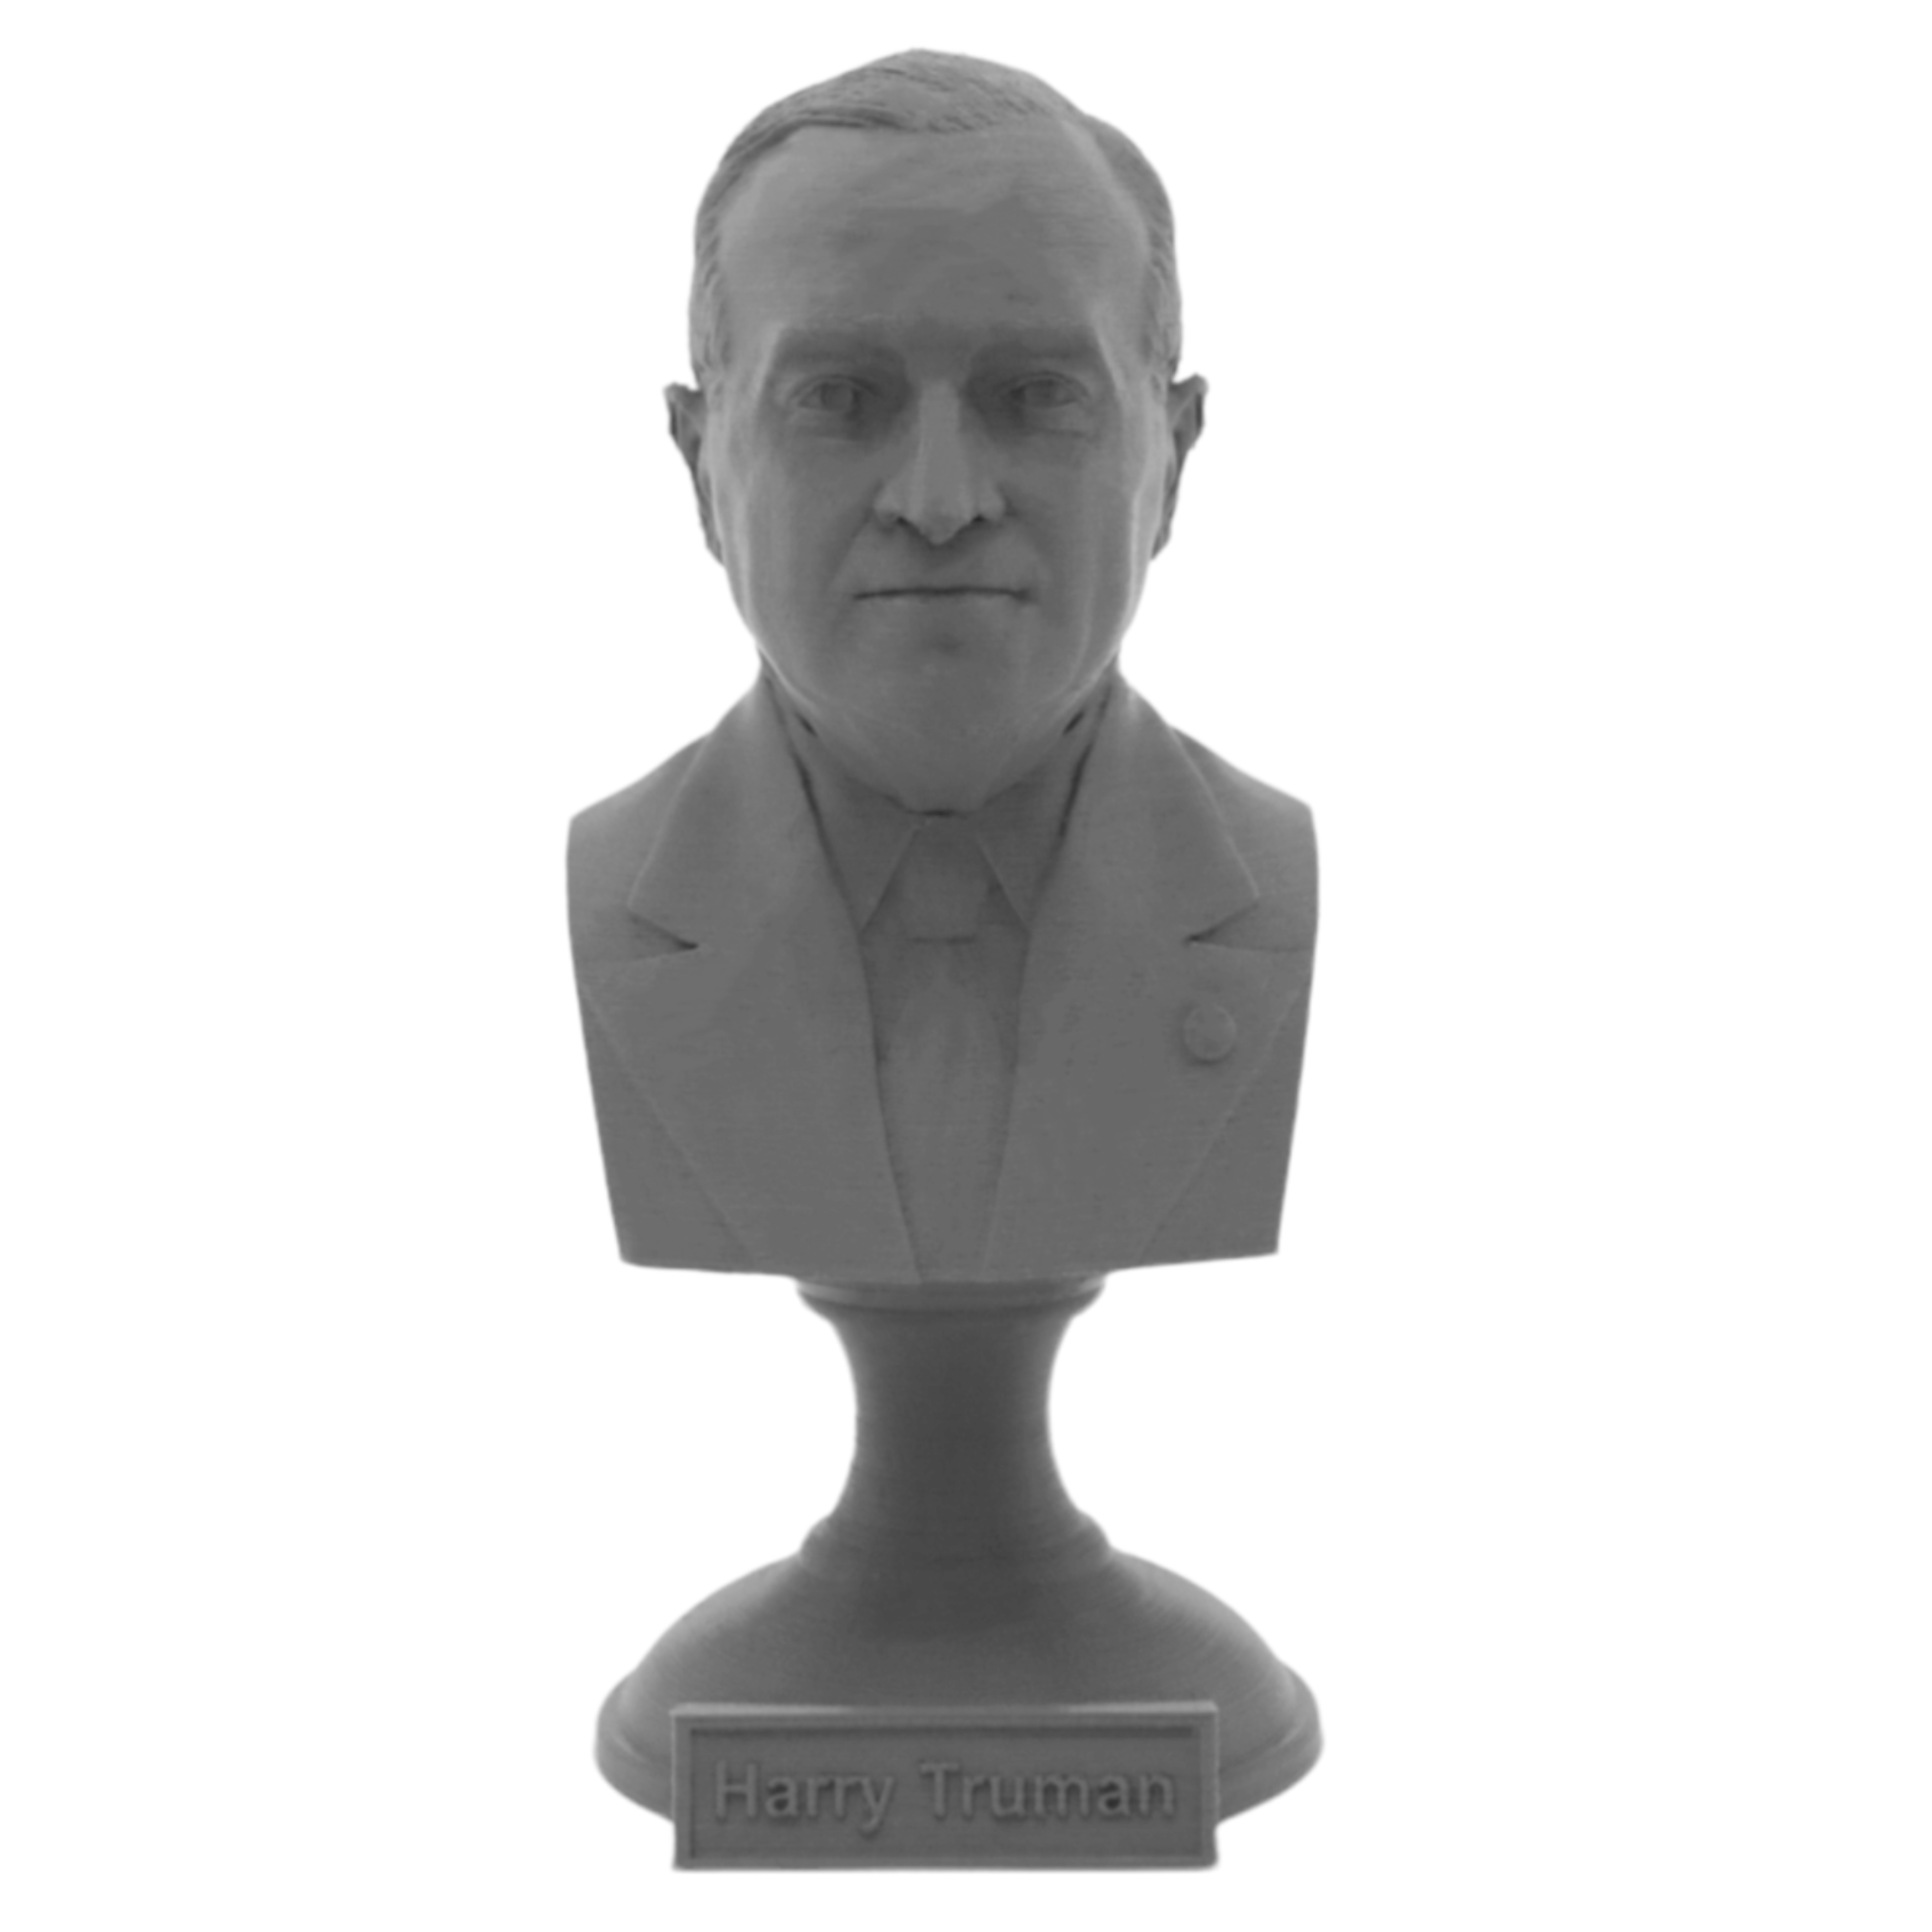 Harry Truman, 33rd US President, Sculpture Bust on Pedestal